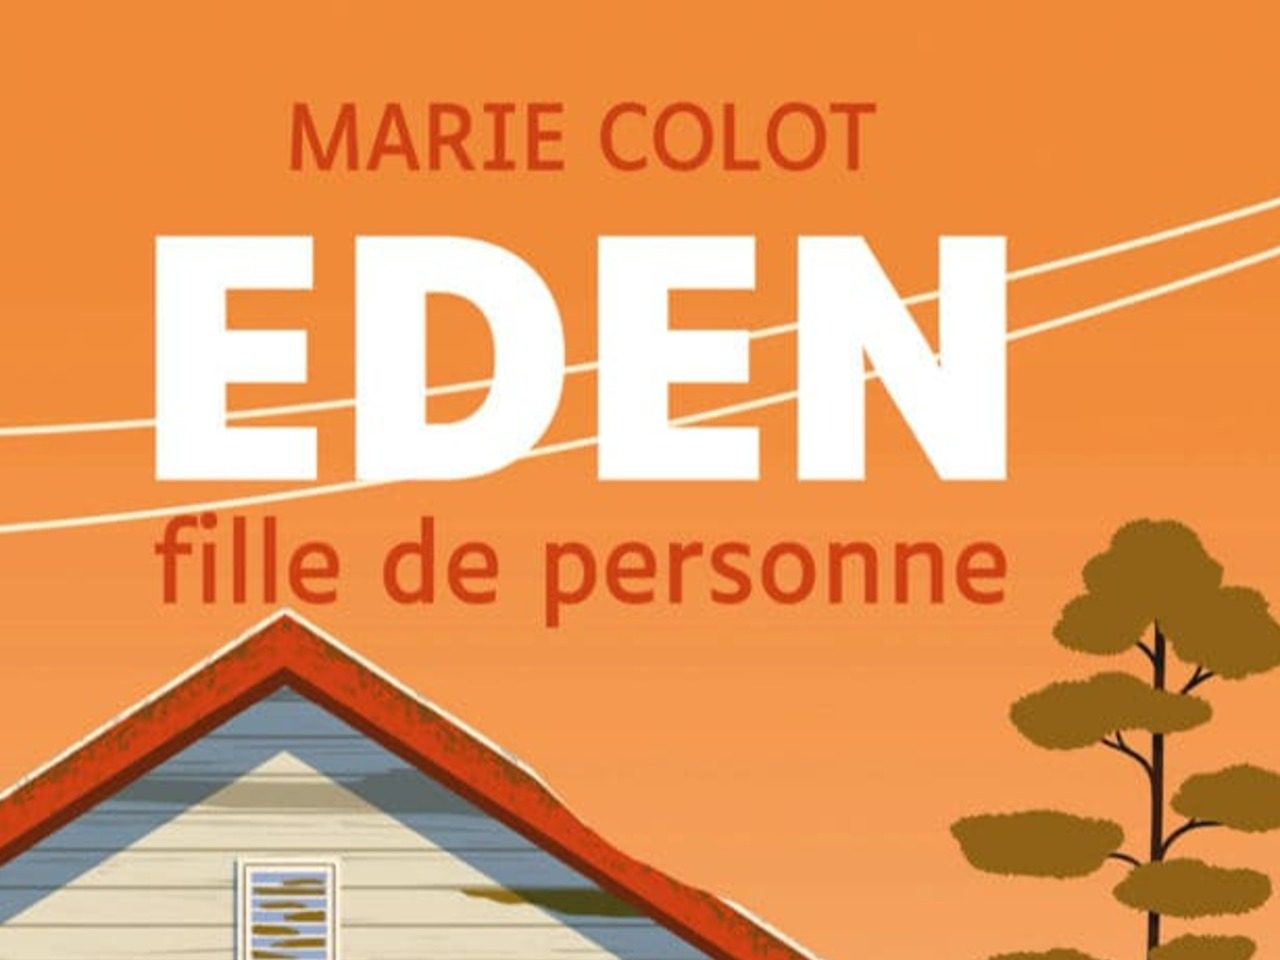 Couverture du roman jeunesse "Eden" de l'autrice belge Marie Colot, éd. Actes Sud